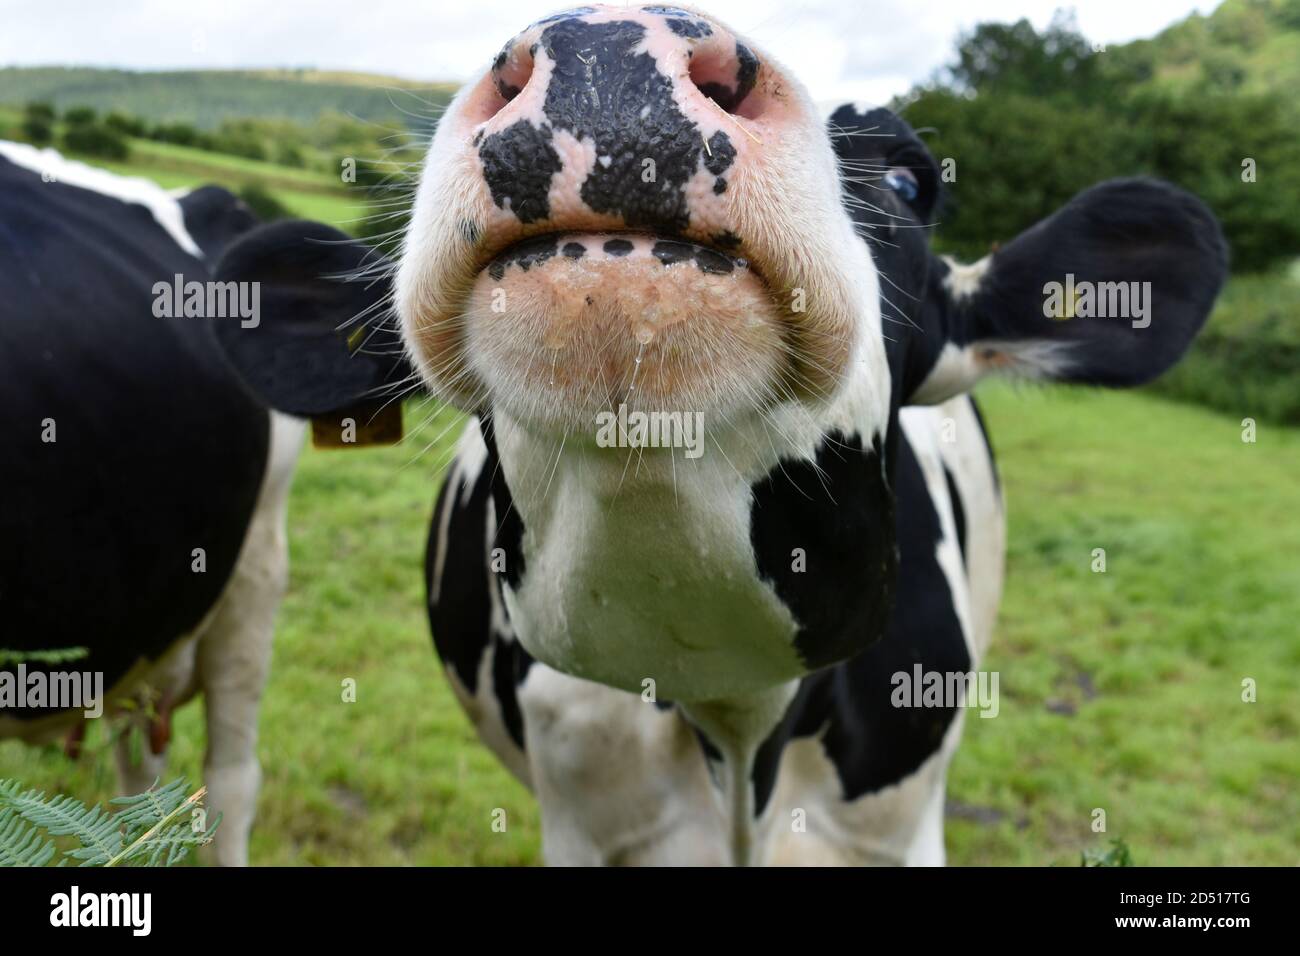 Nahaufnahme komisches Bild von Nase und Mund der Kuh, Kopf hochgehoben und zeigt Nasenlöcher und Ohren aus. Schwarz-weiße Kuh im grünen Feld im Sommer Stockfoto